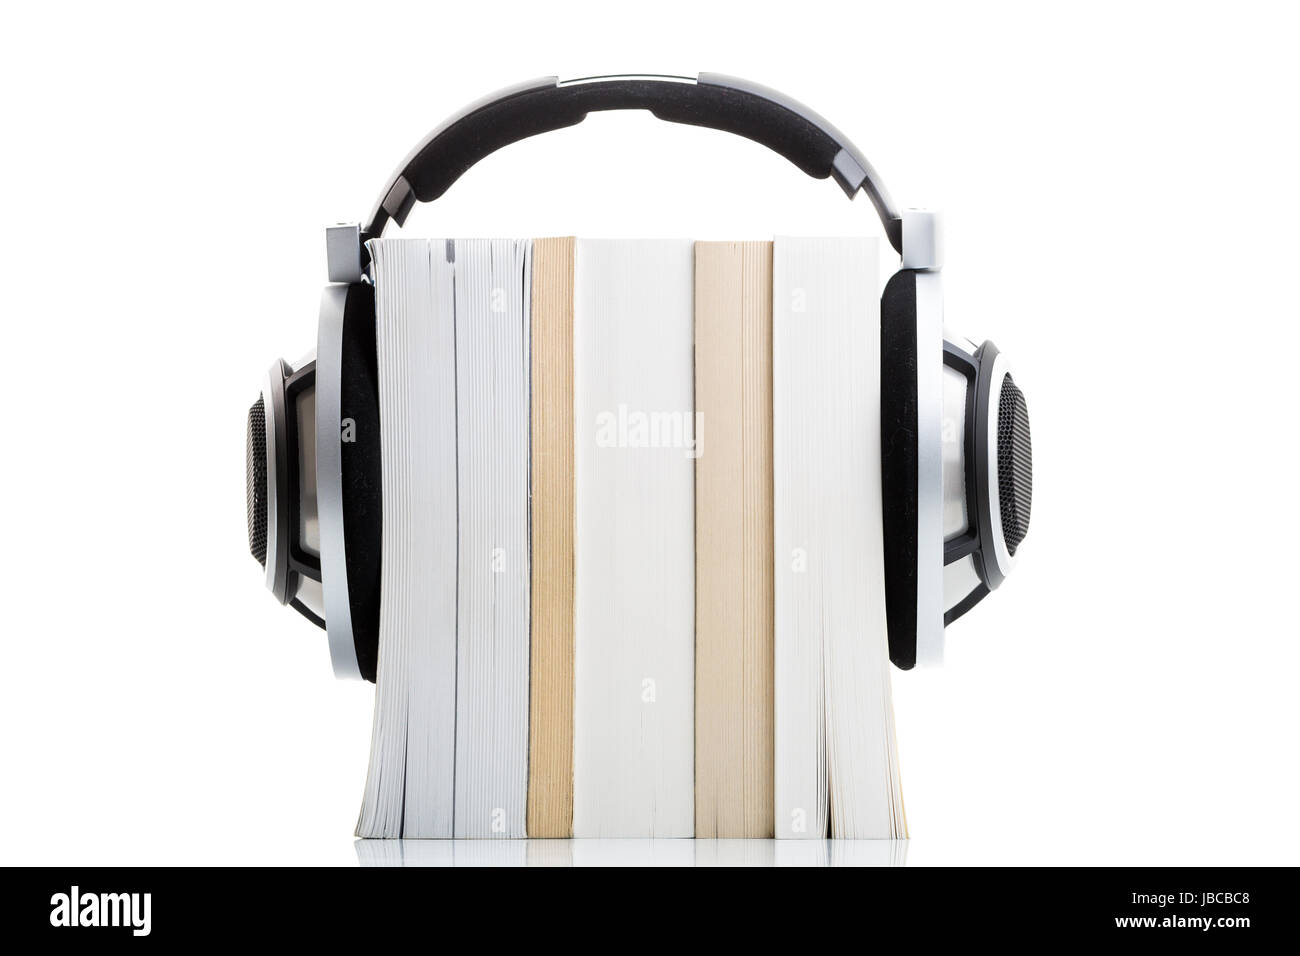 Hörbuch-Konzept - hören Sie Ihre Bücher in HD-Qualität; High-End-Hifi-Kopfhörer über mehrere Bücher auf weiß Stockfoto